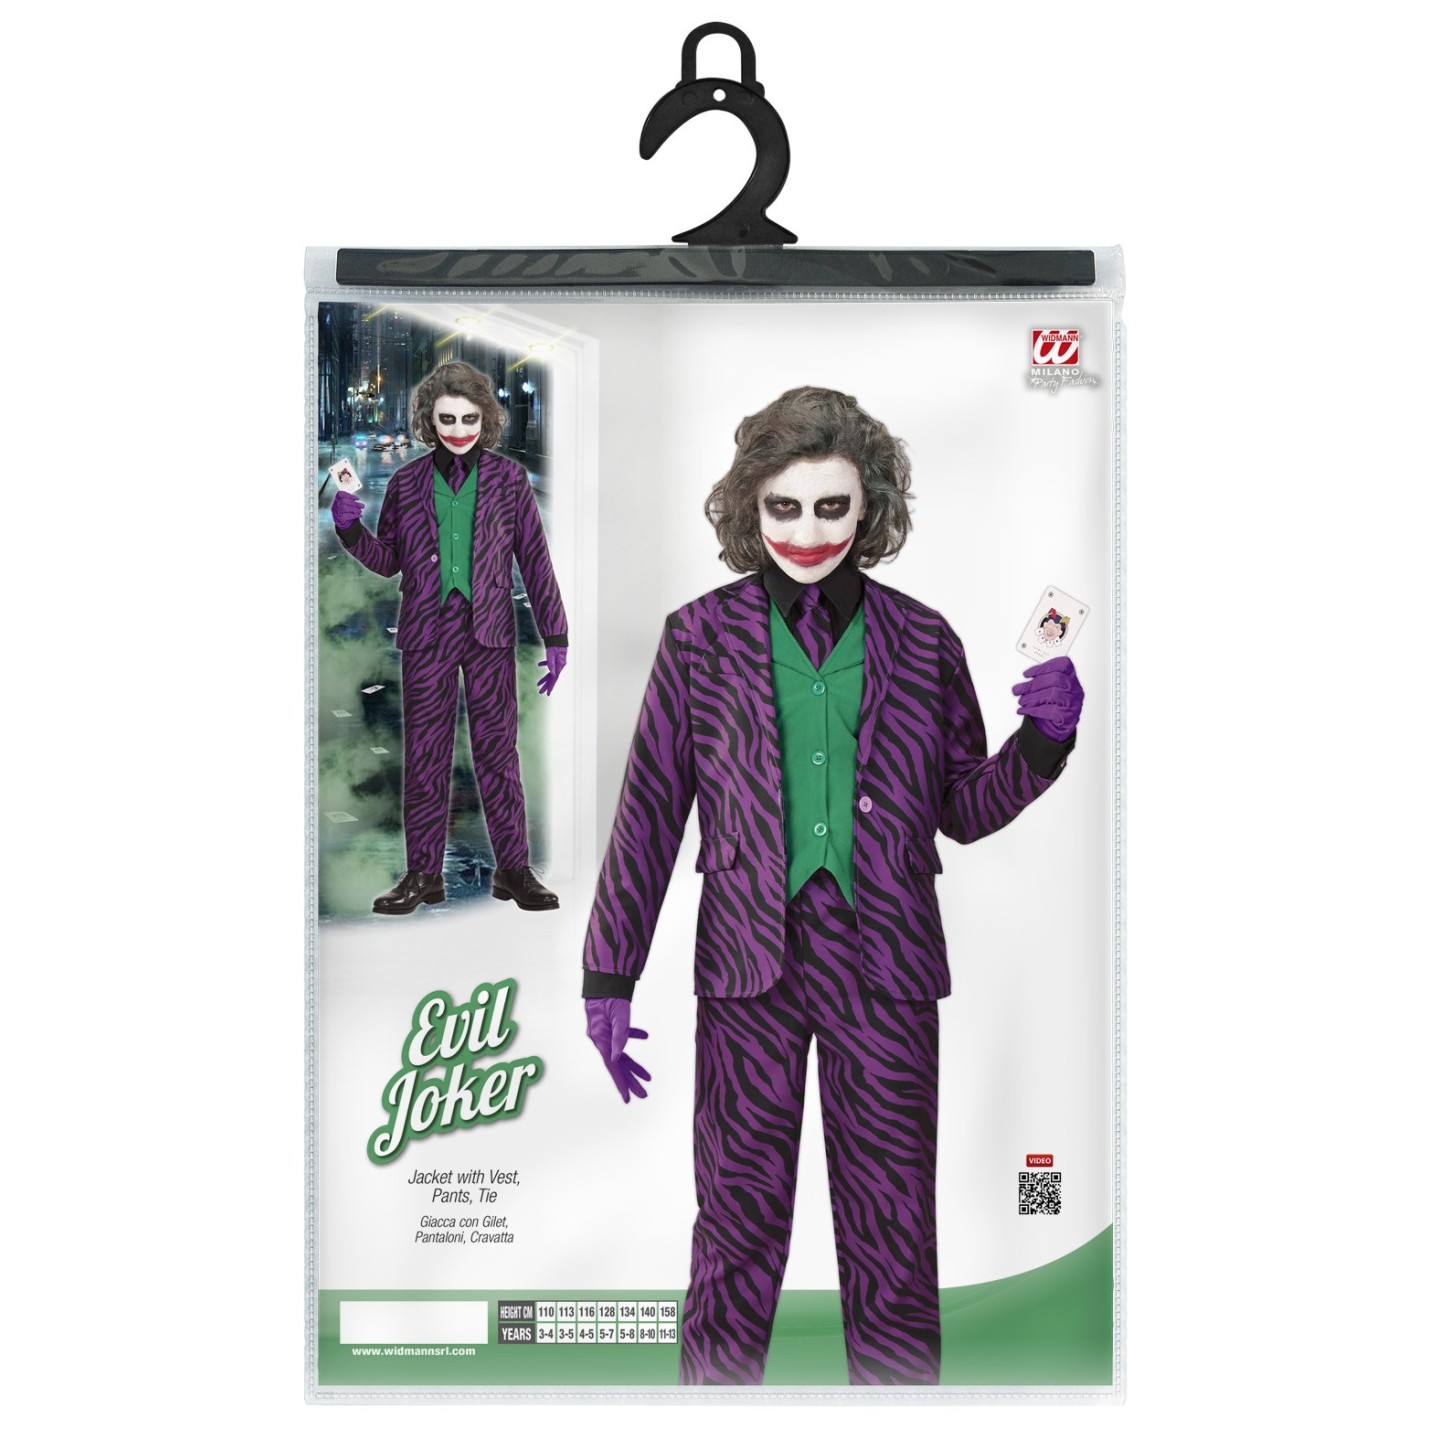 aantrekkelijk Ongemak geweld The Joker kostuum kind kopen ? | Jokershop.be - Verkleedkleding